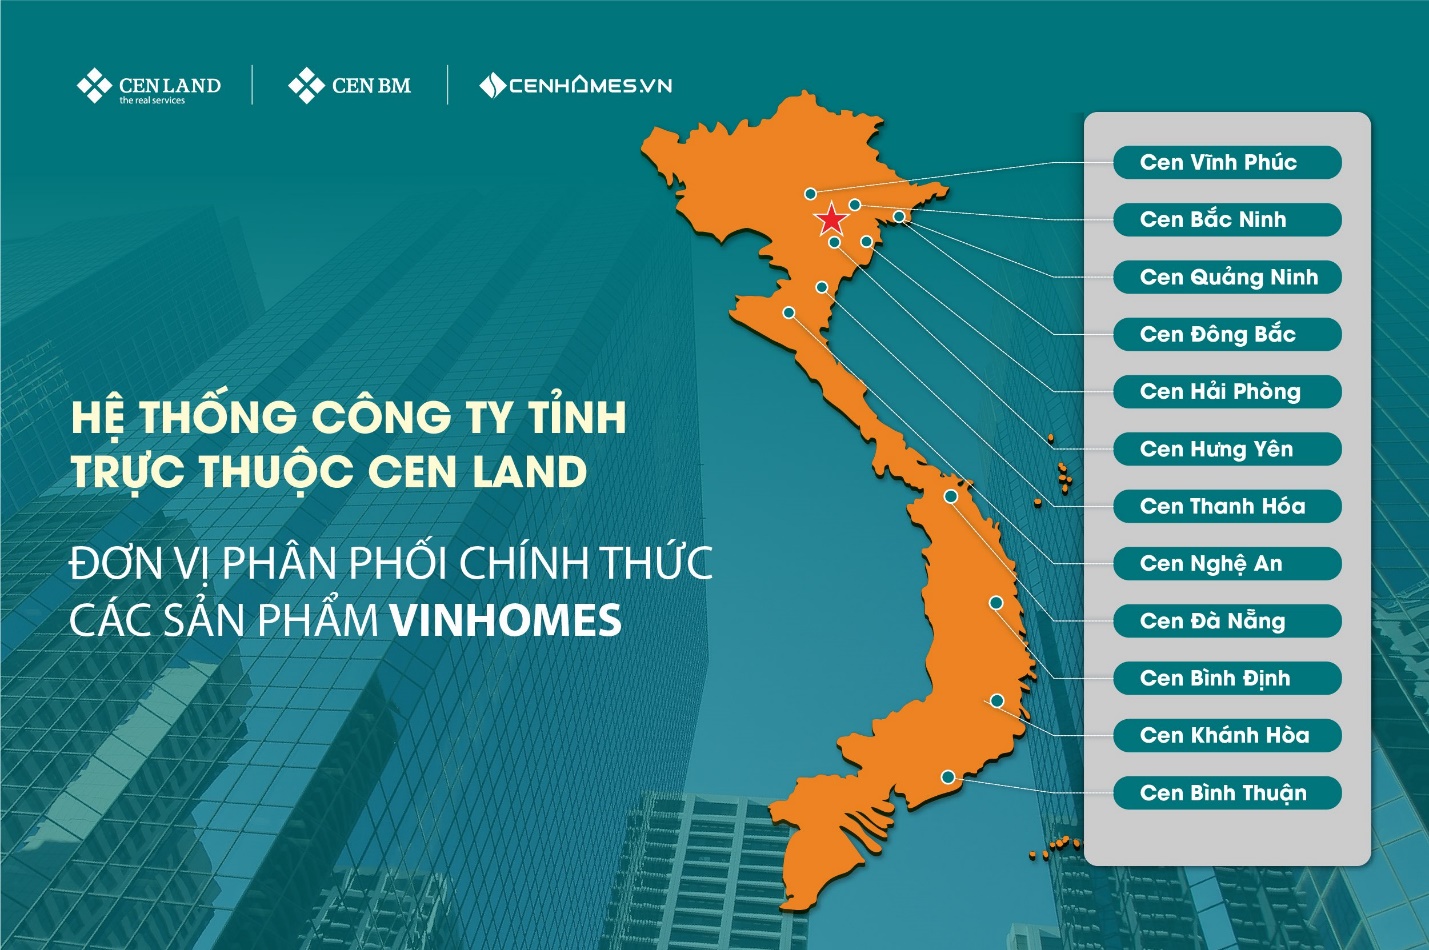 Các công ty tỉnh thuộc Cen Land phân phối chính thức sản phẩm Vinhomes - Ảnh 2.